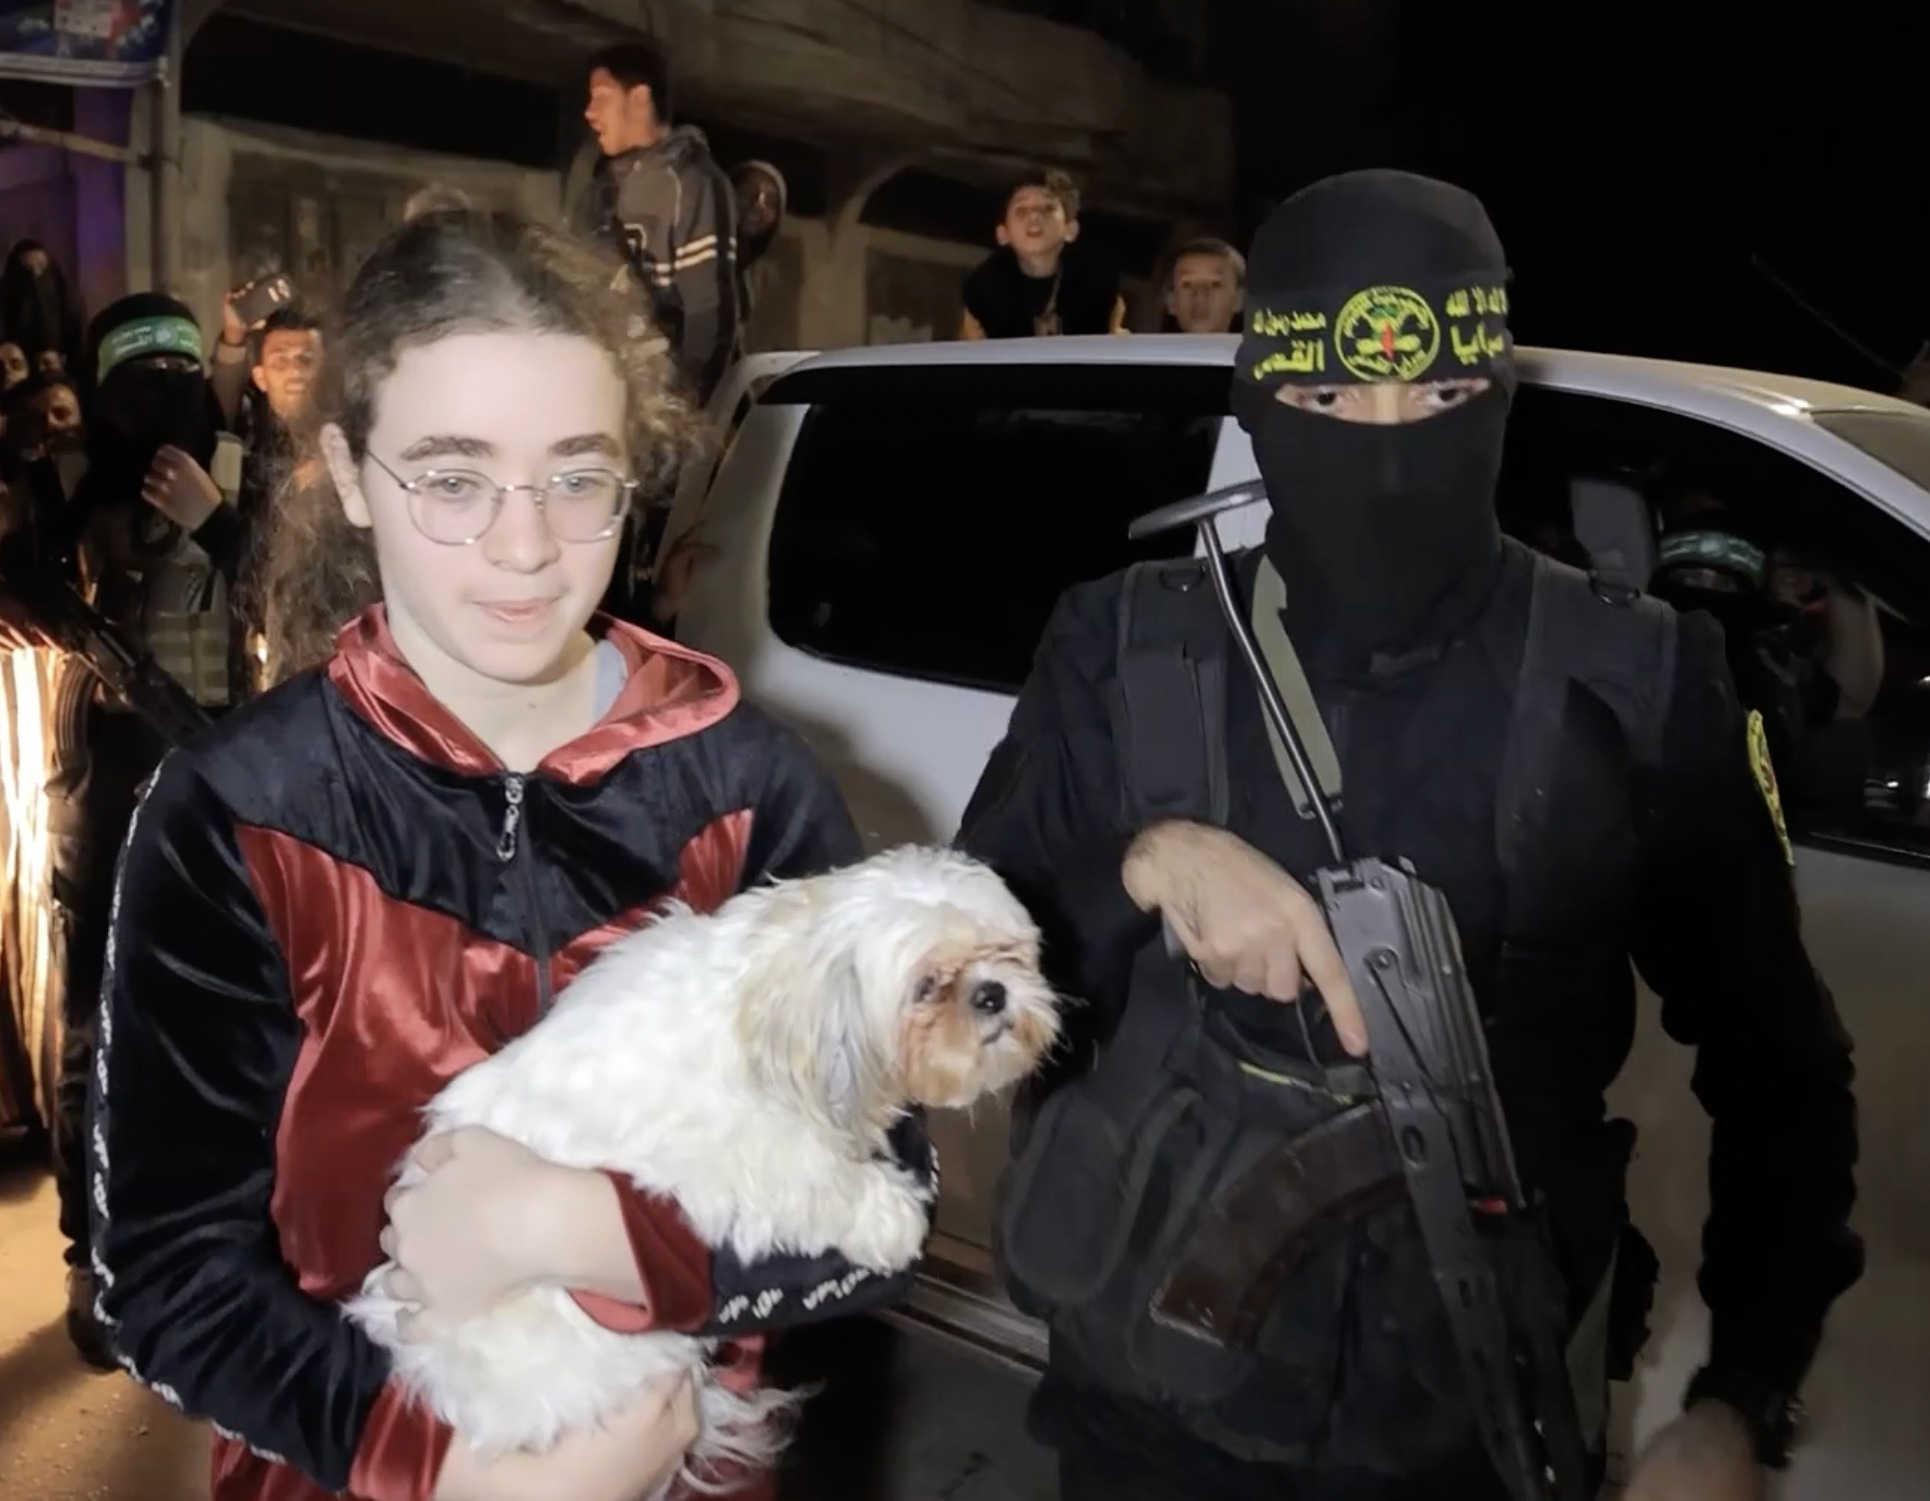 Die 17-jährige Mia Leimberg wurde gesehen, wie sie mit ihrem Hund das Haus verließ, als sie am Dienstag von der Hamas freigelassen wurde